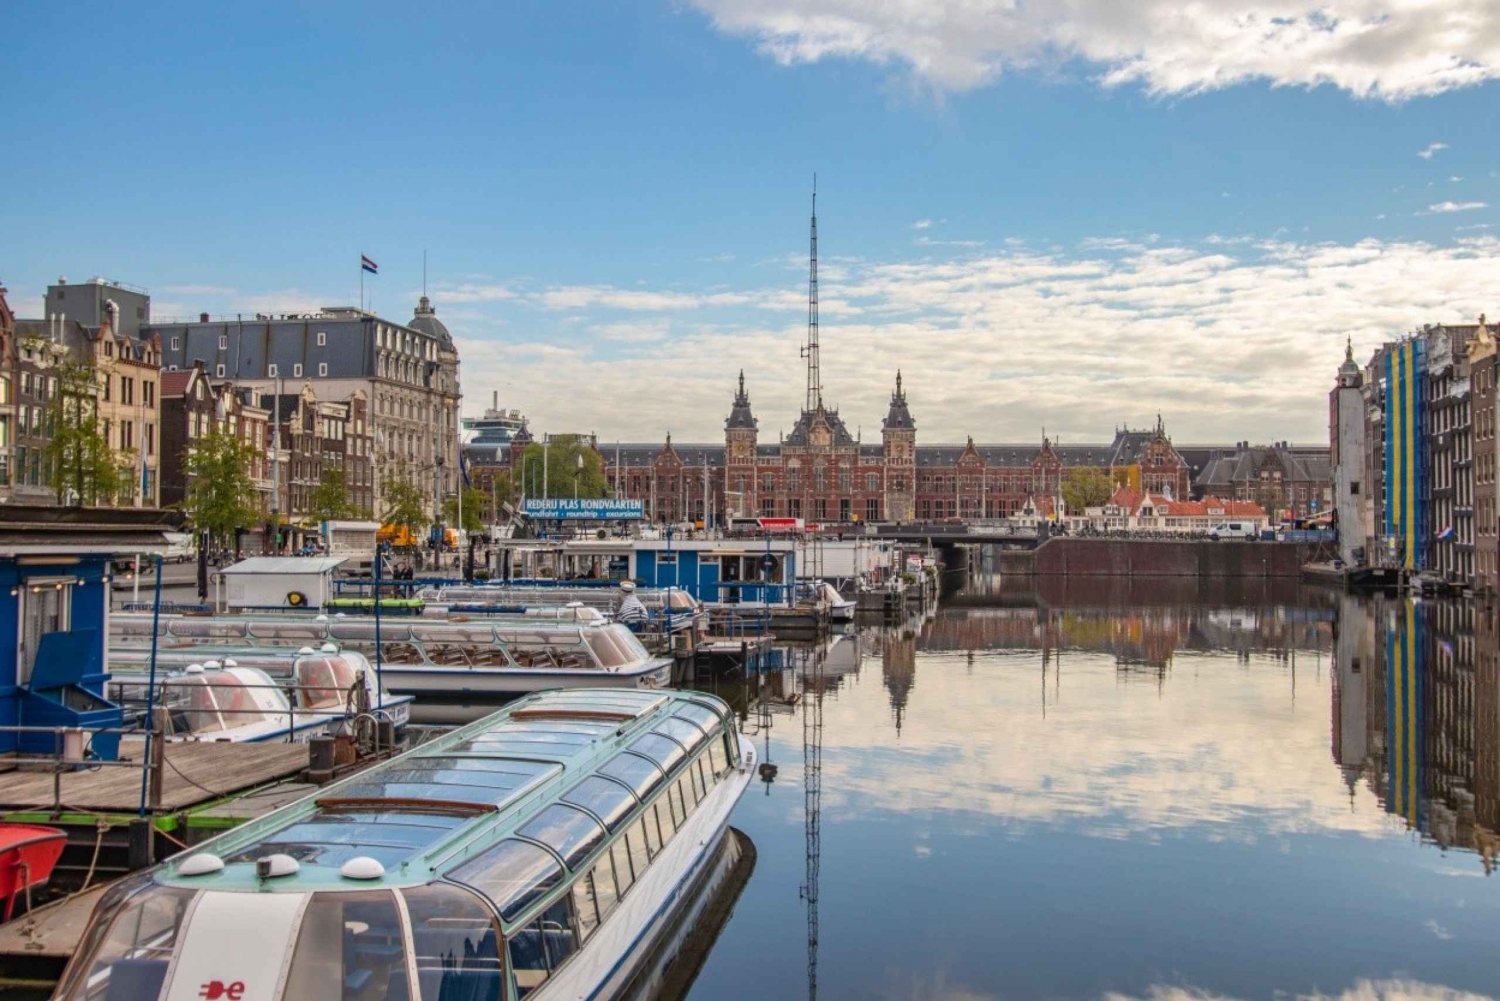 Ámsterdam: Capta los lugares más fotogénicos con un lugareño